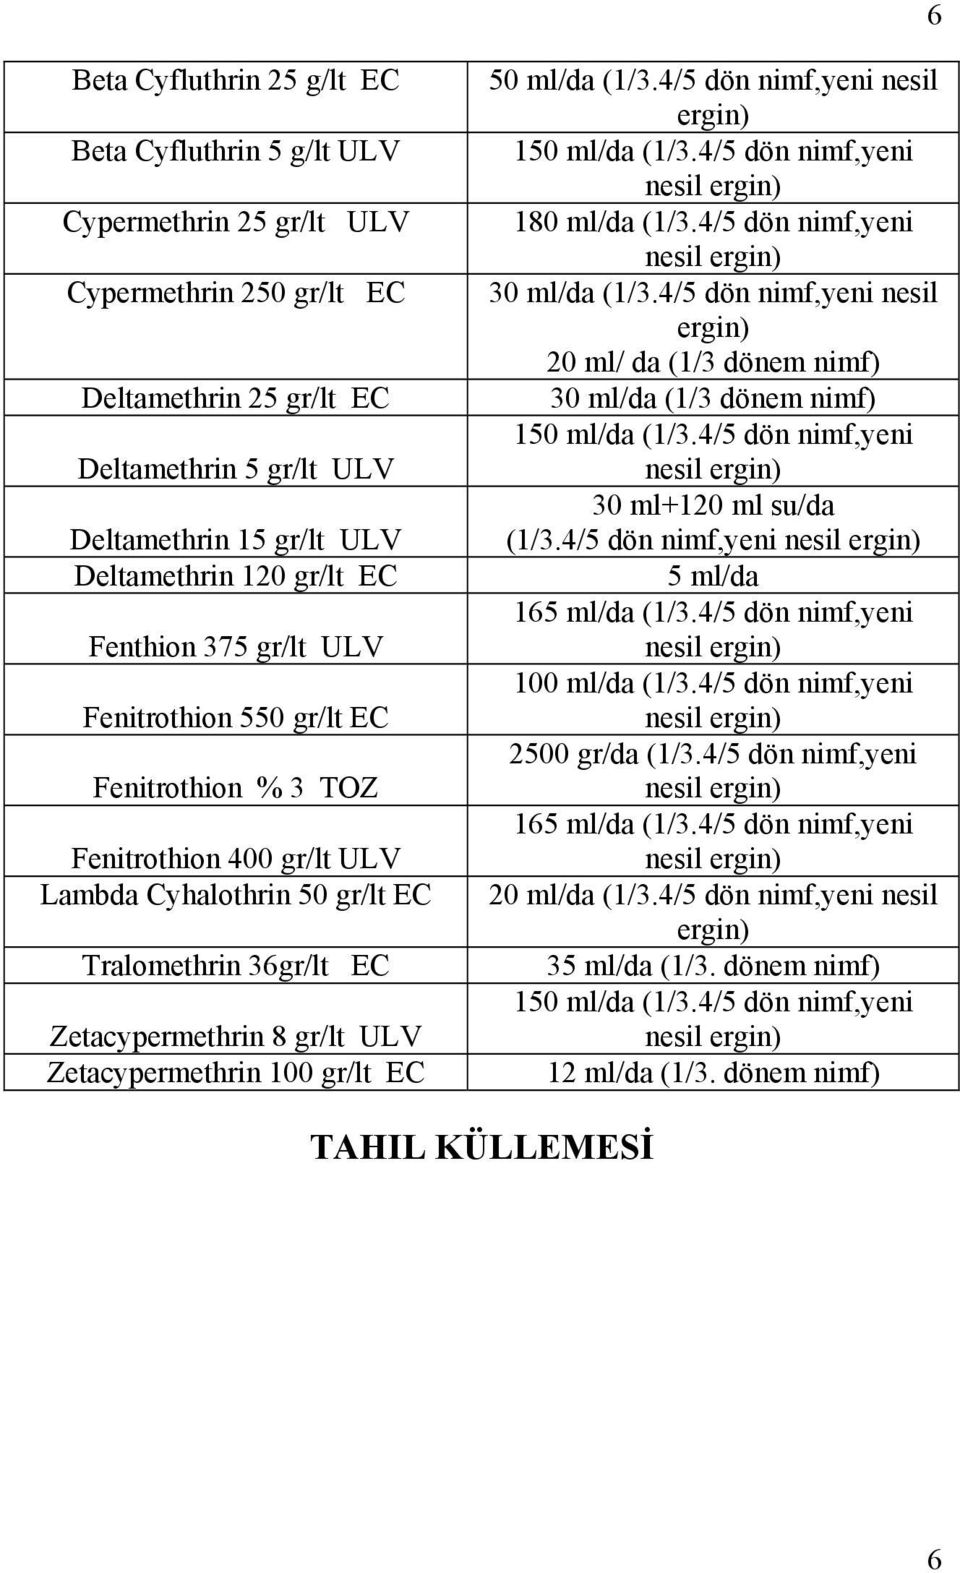 Zetacypermethrin 100 gr/lt EC 50 ml/da (1/3.4/5 dön nimf,yeni nesil ergin) 150 ml/da (1/3.4/5 dön nimf,yeni nesil ergin) 180 ml/da (1/3.4/5 dön nimf,yeni nesil ergin) 30 ml/da (1/3.